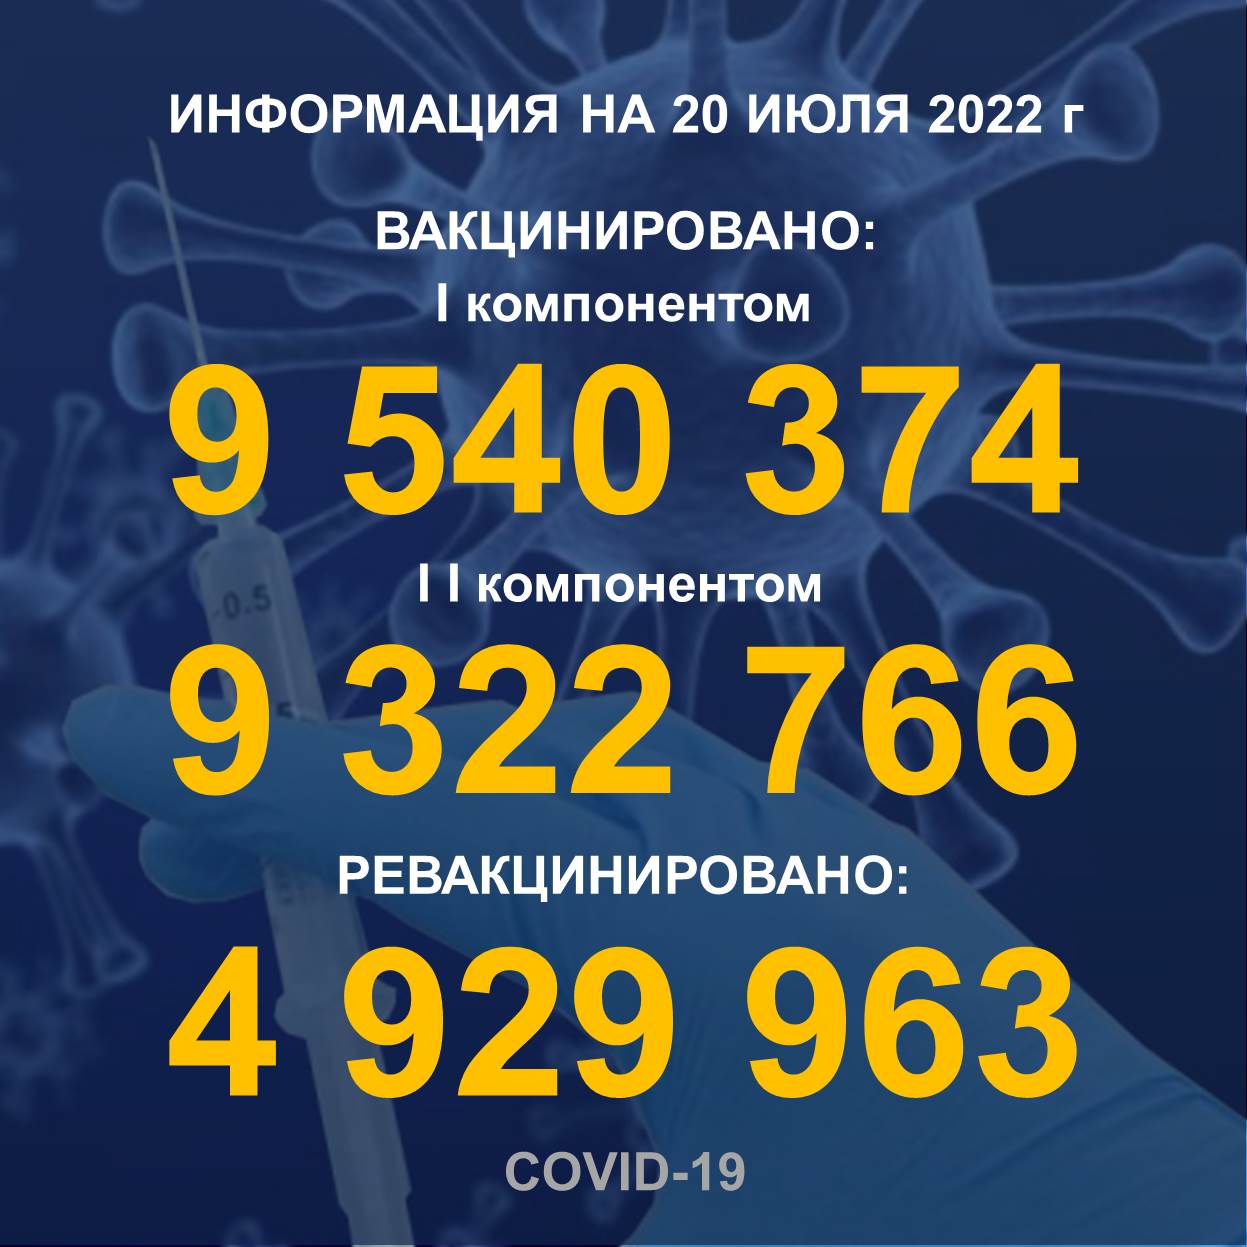 Количество людей, получивших вакцину Рfizer в Казахстане по состоянию на 20.07.2022 года